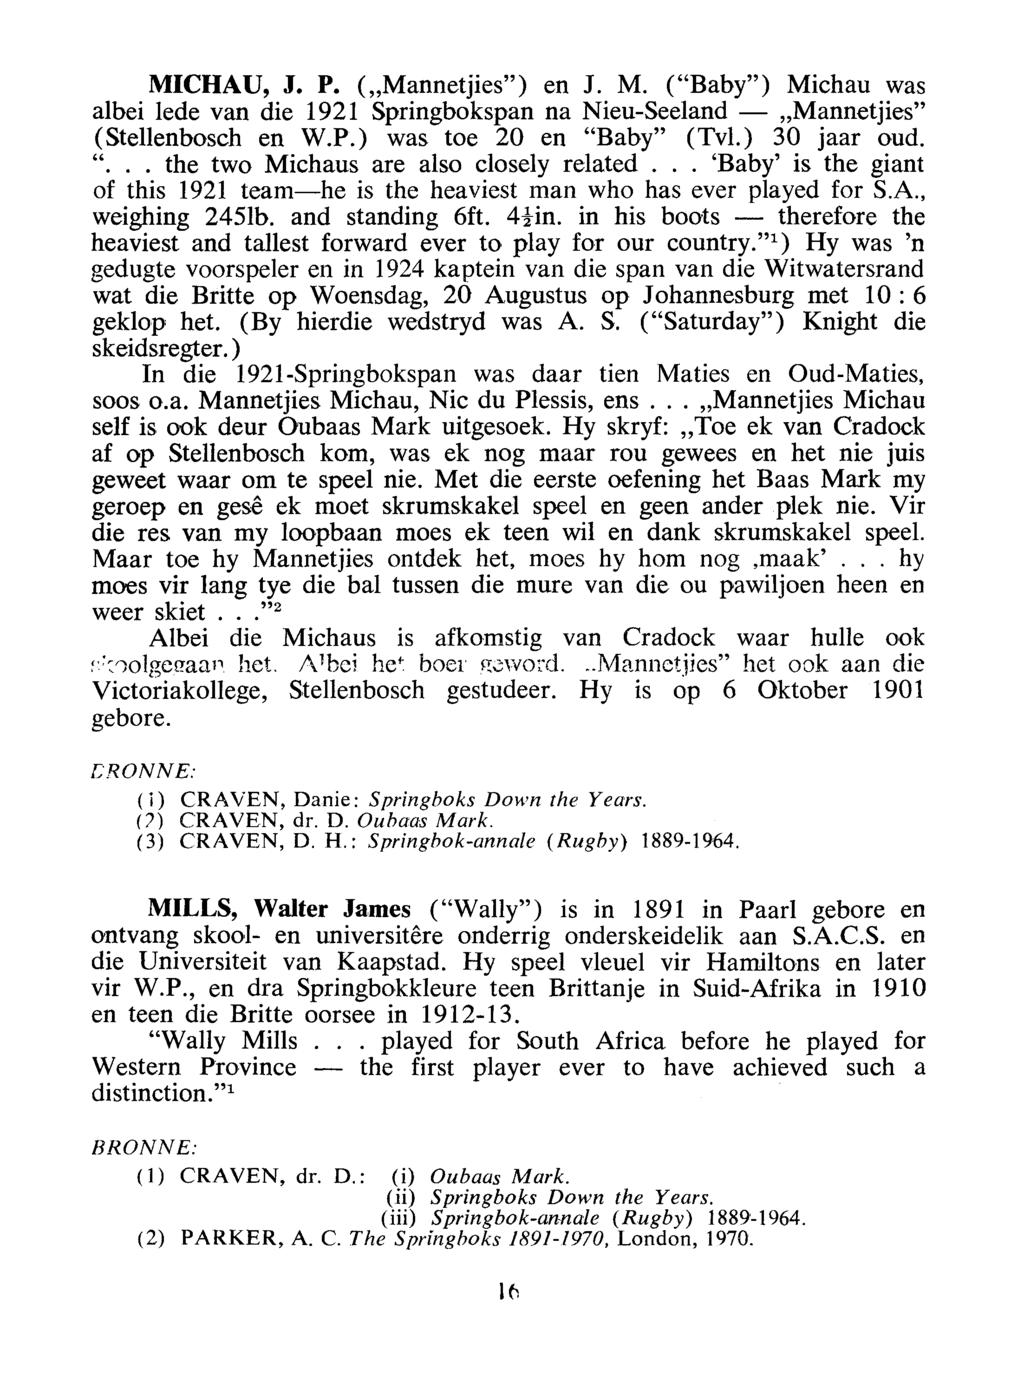 MICHAU, J. P. ("Mannetjies") en J. M. ("Baby") Michau was albei lede van die 1921 Springbokspan na Nieu-Seeland - "Mannetjies" (Stellenbosch en W.P.) was toe 20 en "Baby" (Tv!.) 30 jaar oud. "... the two Michaus are also closely related.